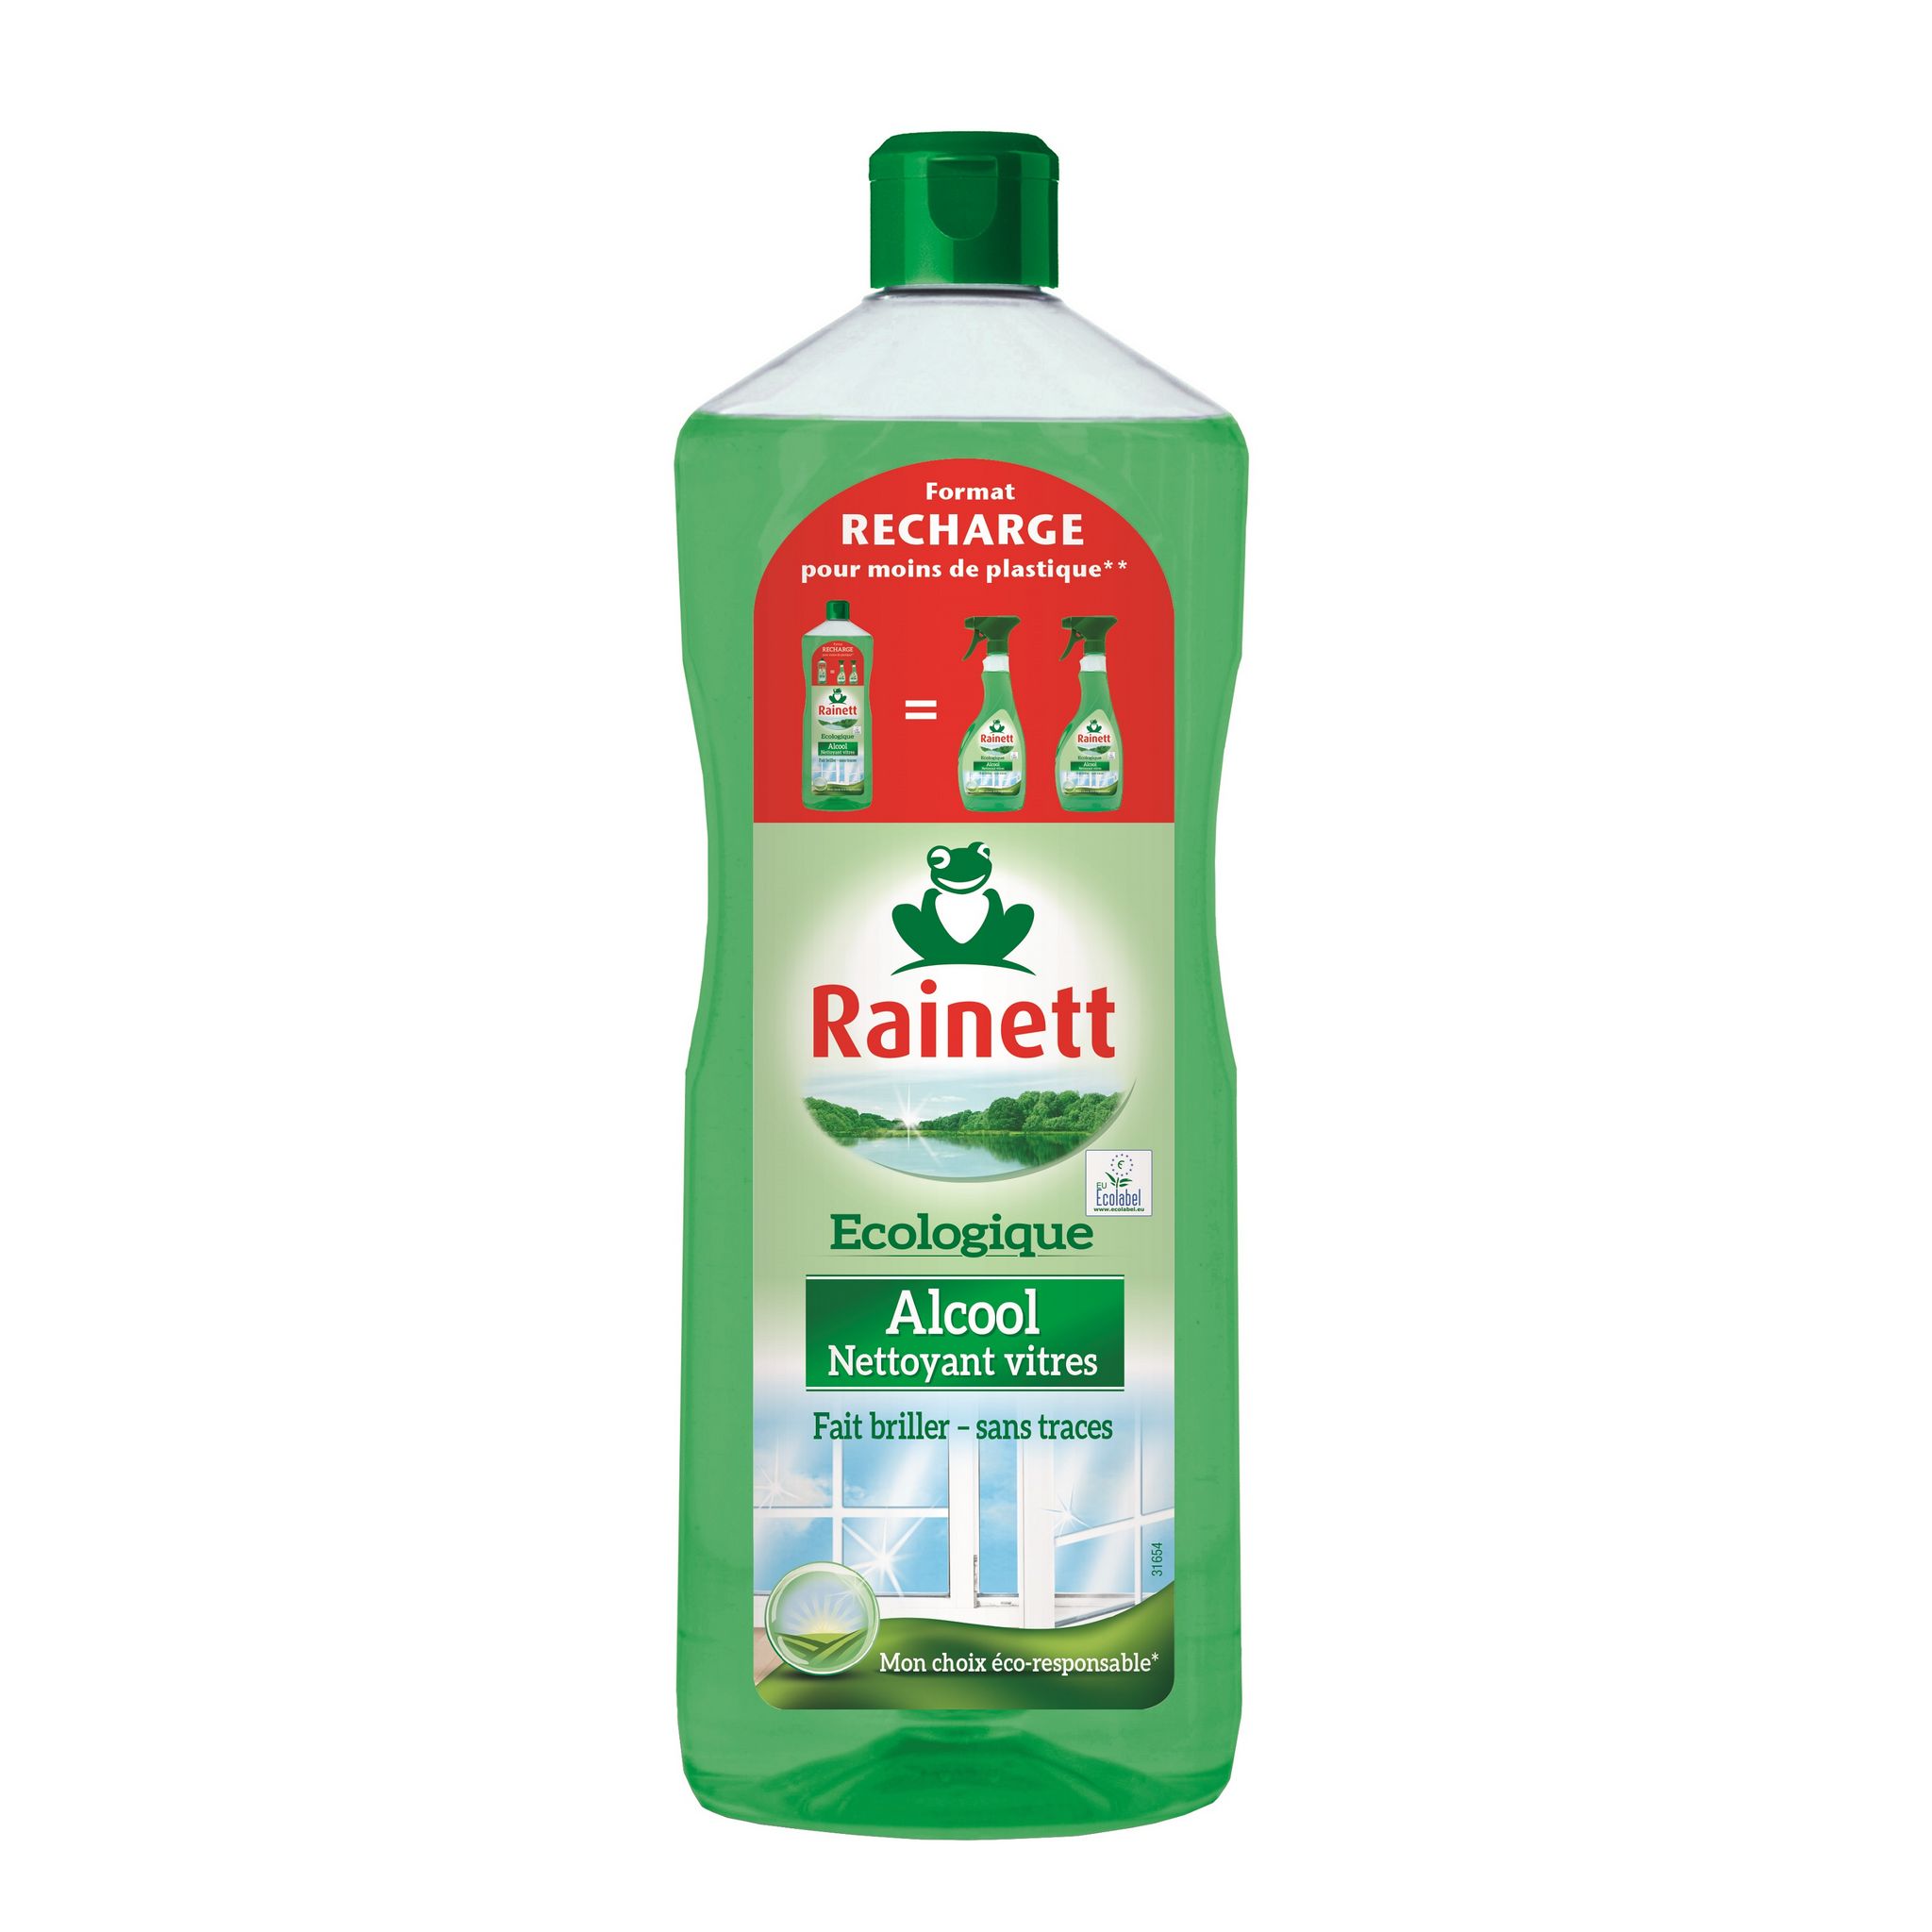 Rainett, pour un monde plus propre